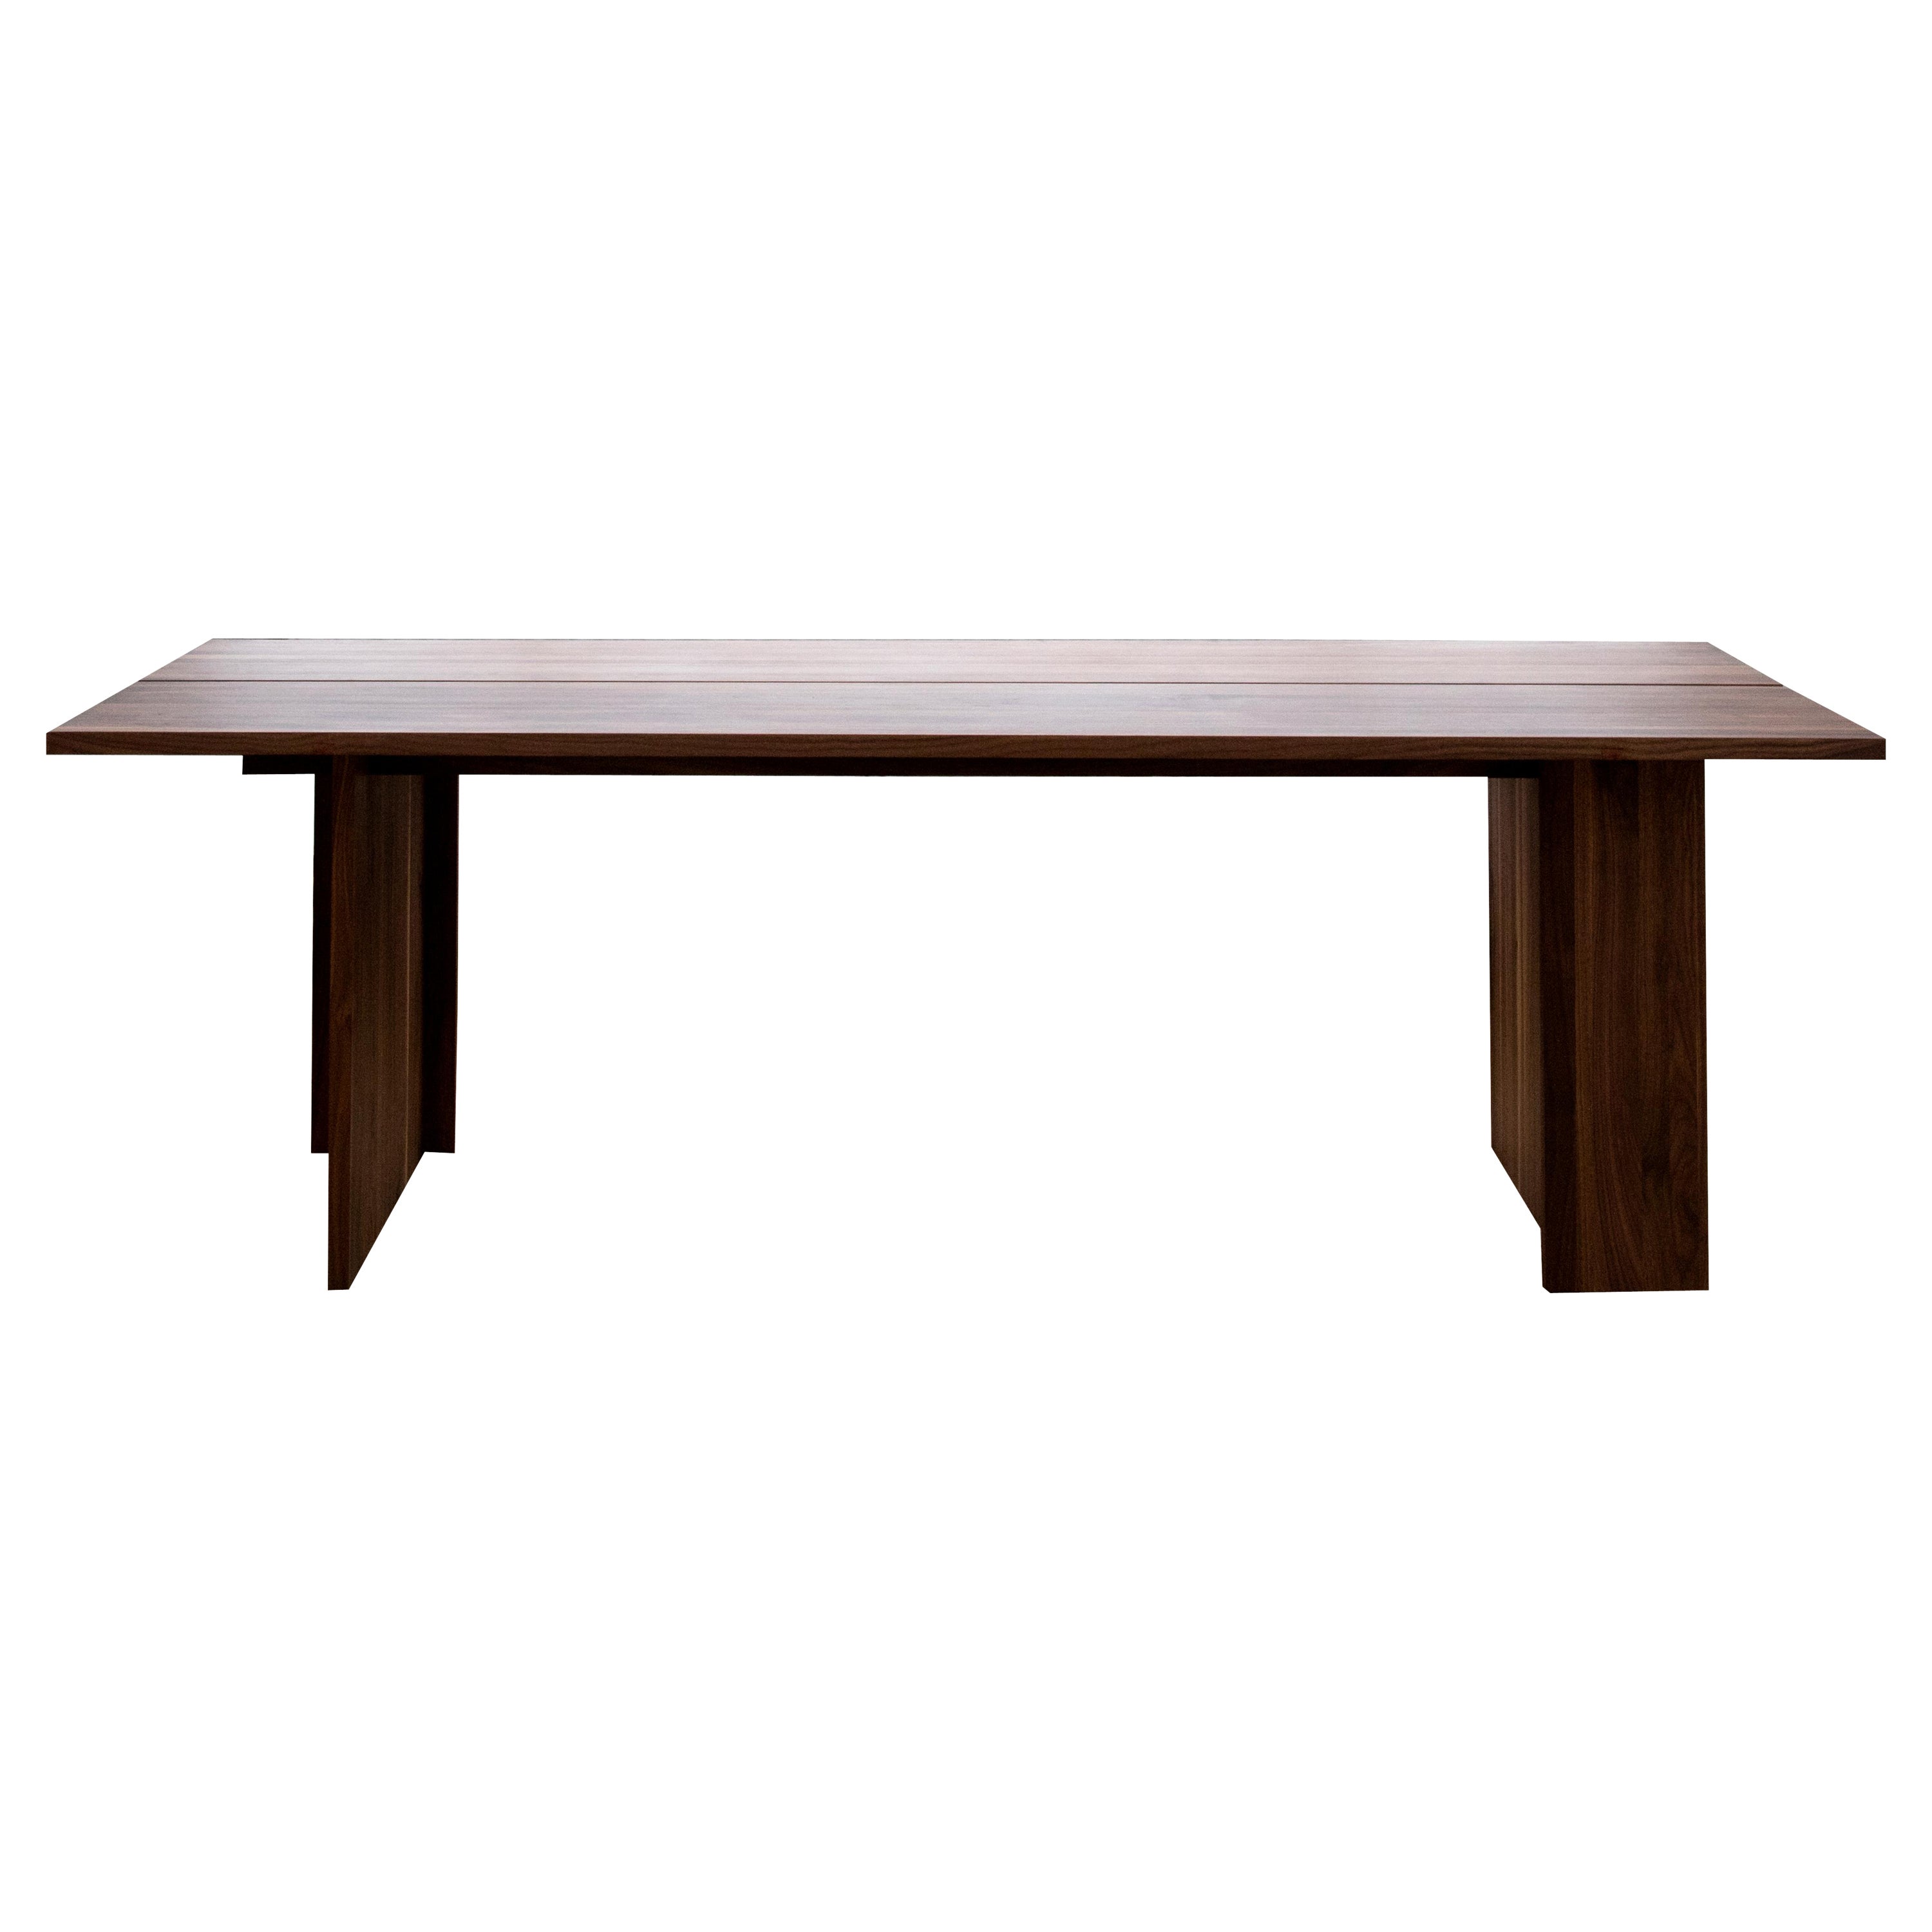 Dominique Table by Part Studio Atelier For Sale